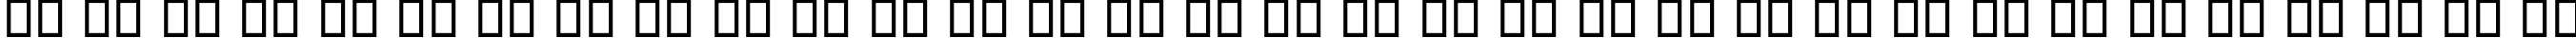 Пример написания русского алфавита шрифтом P22 Da Vinci Backwards